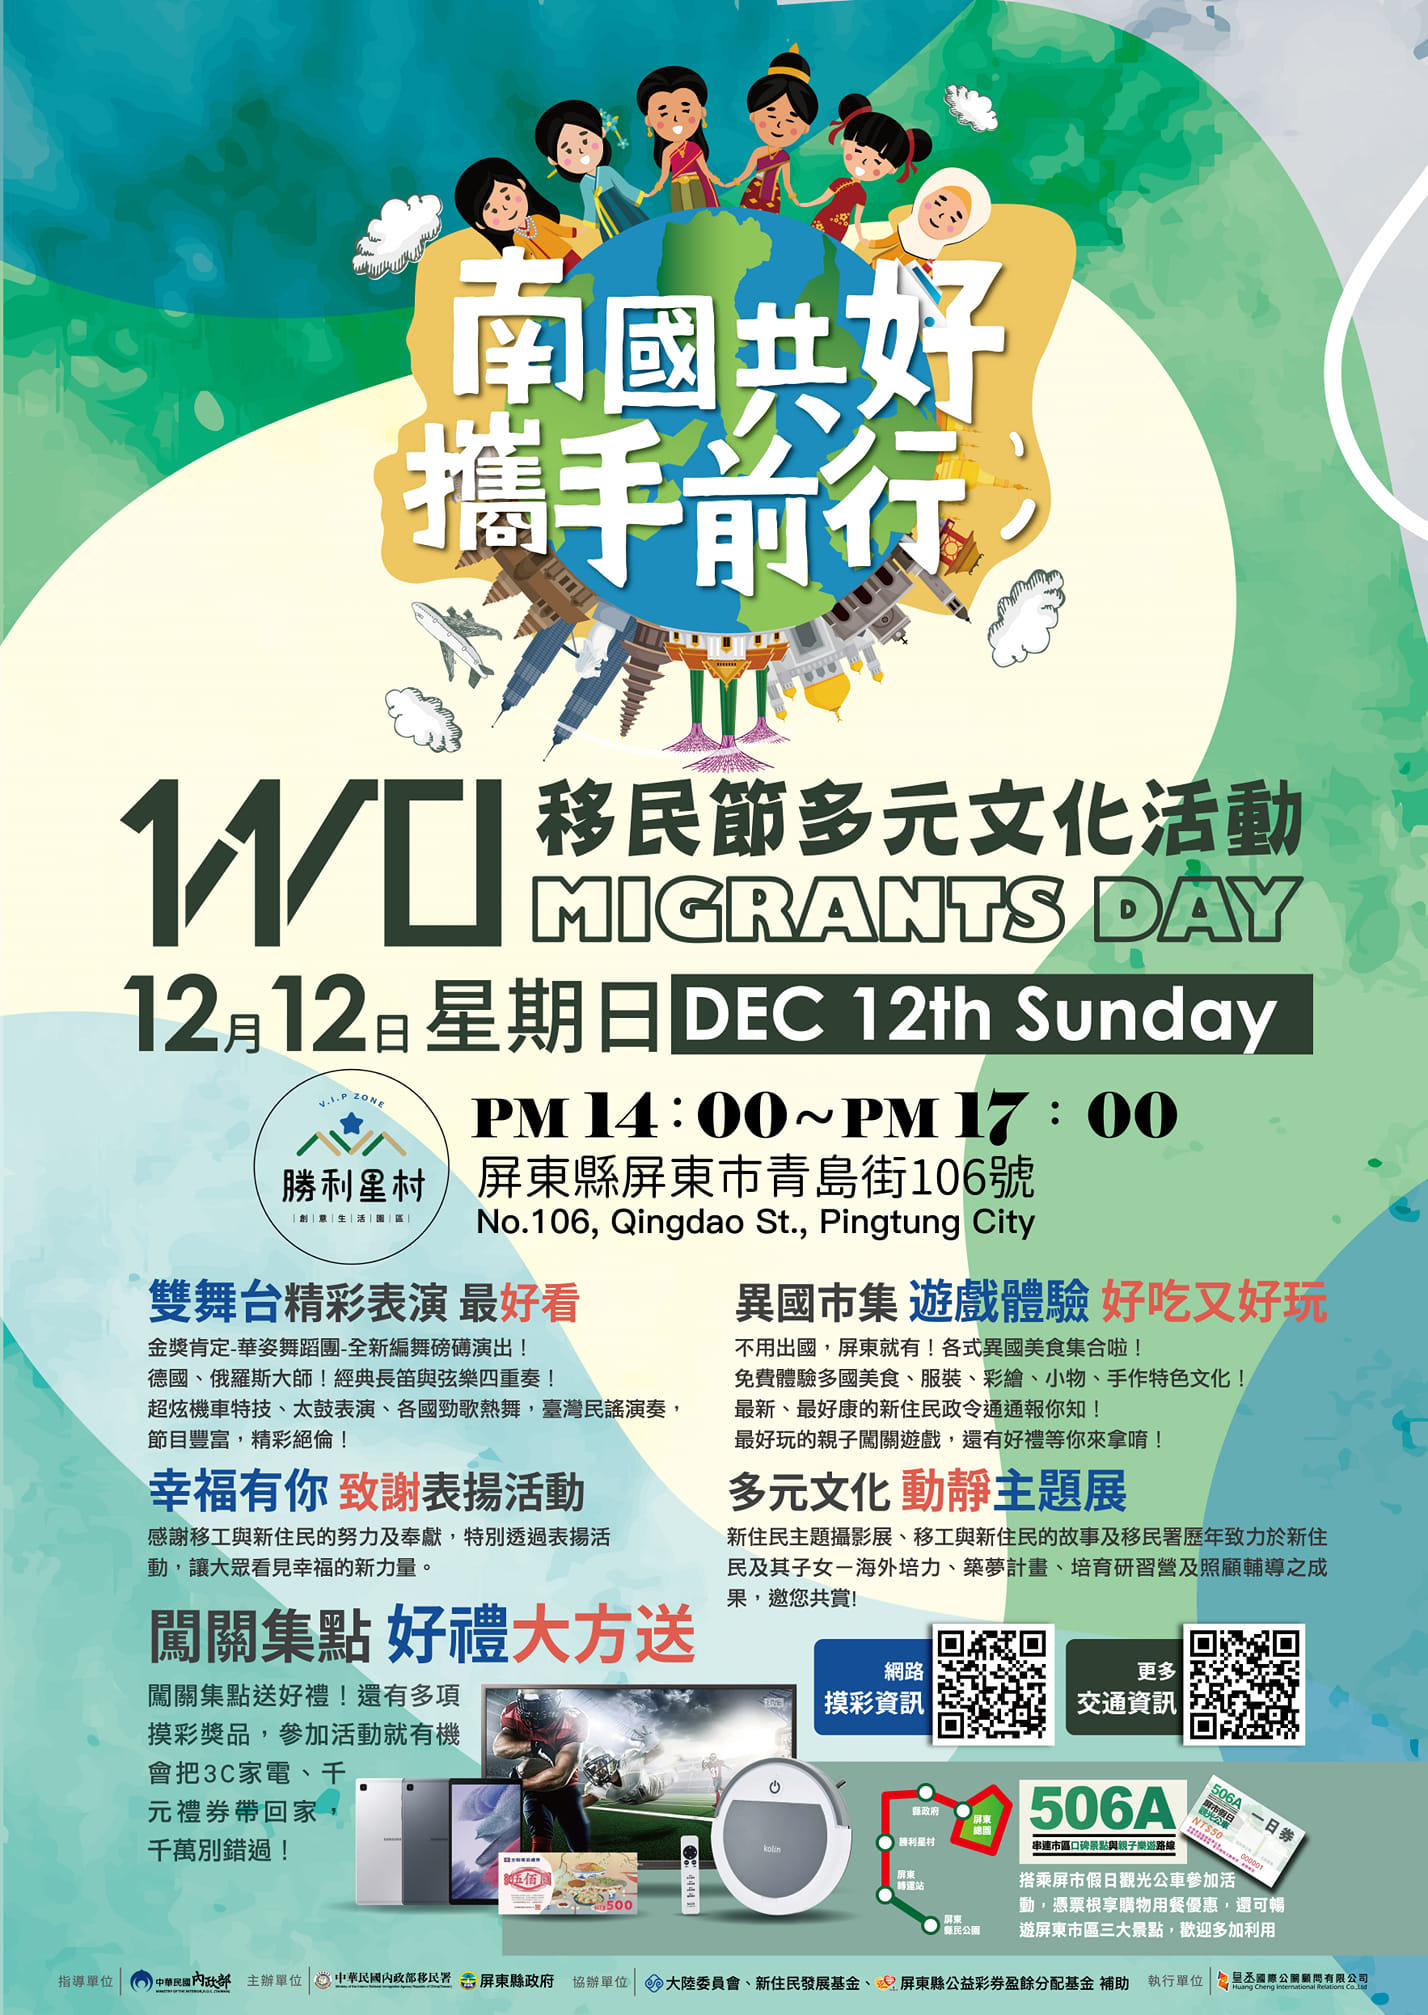 Ngày 12/12 tới đây, Sở Di dân - Bộ Nội chính Đài Loan và chính quyền huyện Bình Đông phối hợp tổ chức các hoạt động nhân kỷ niệm Ngày Di dân năm 2021 với chủ đề “南國共好、攜手前行”. (Nguồn ảnh: Sở Di dân)